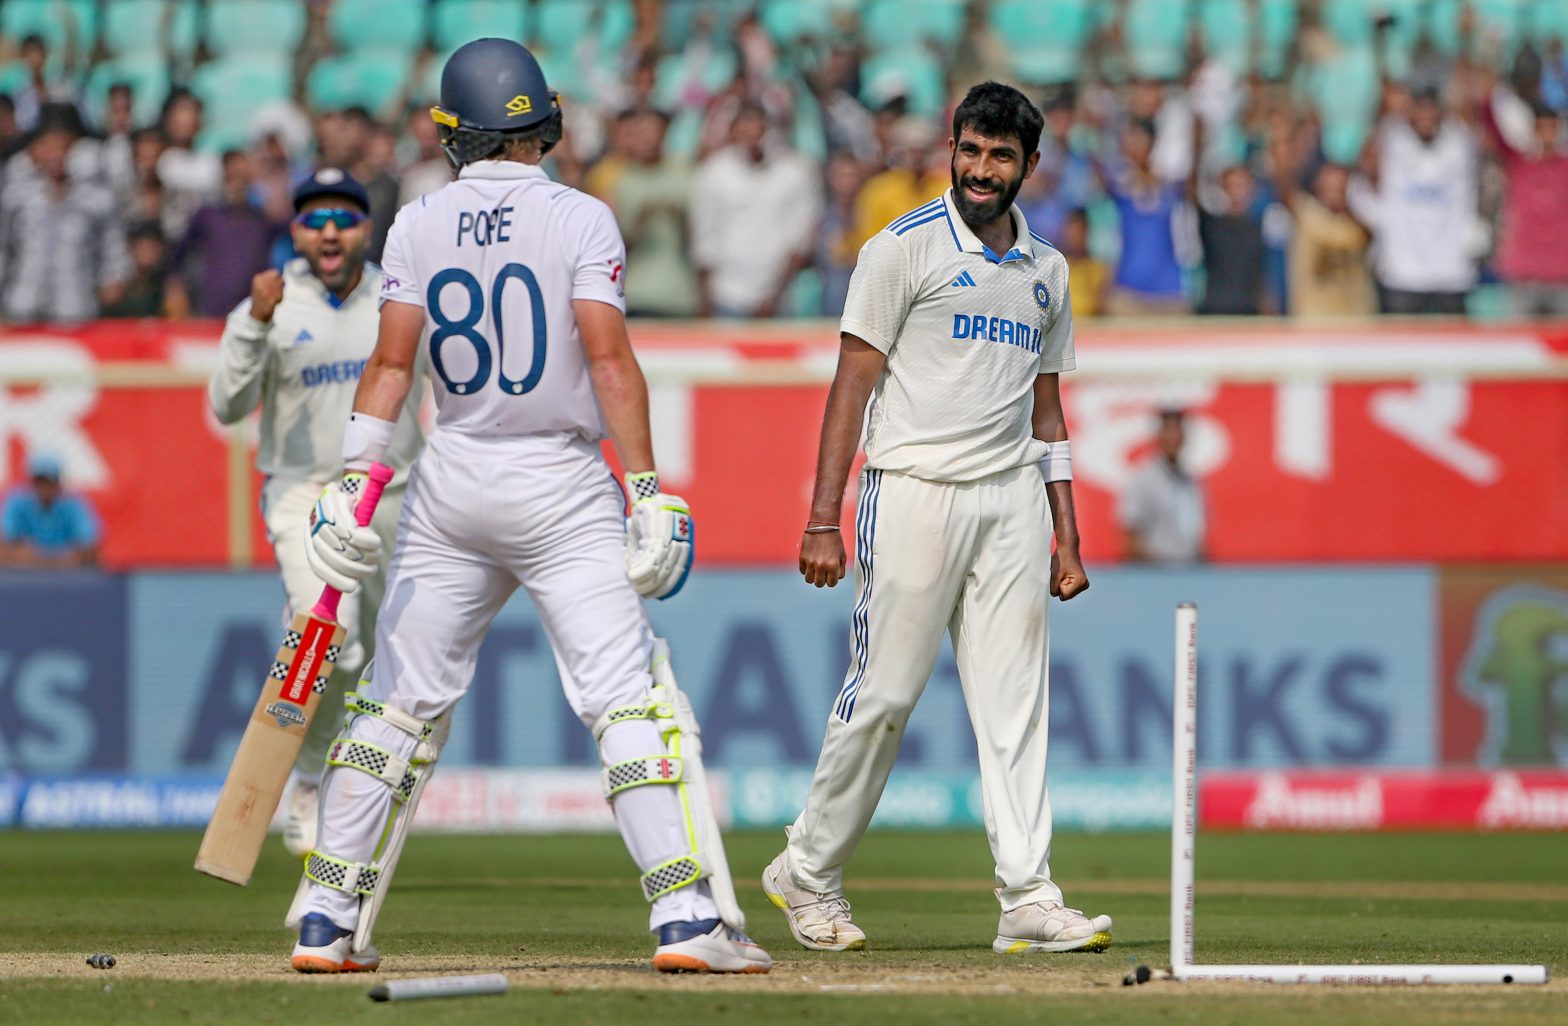 टेस्ट क्रिकेट में सबसे तेज 150+ विकेट लेने वाले भारतीय तेज गेंदबाज बने जसप्रीत बुमराह